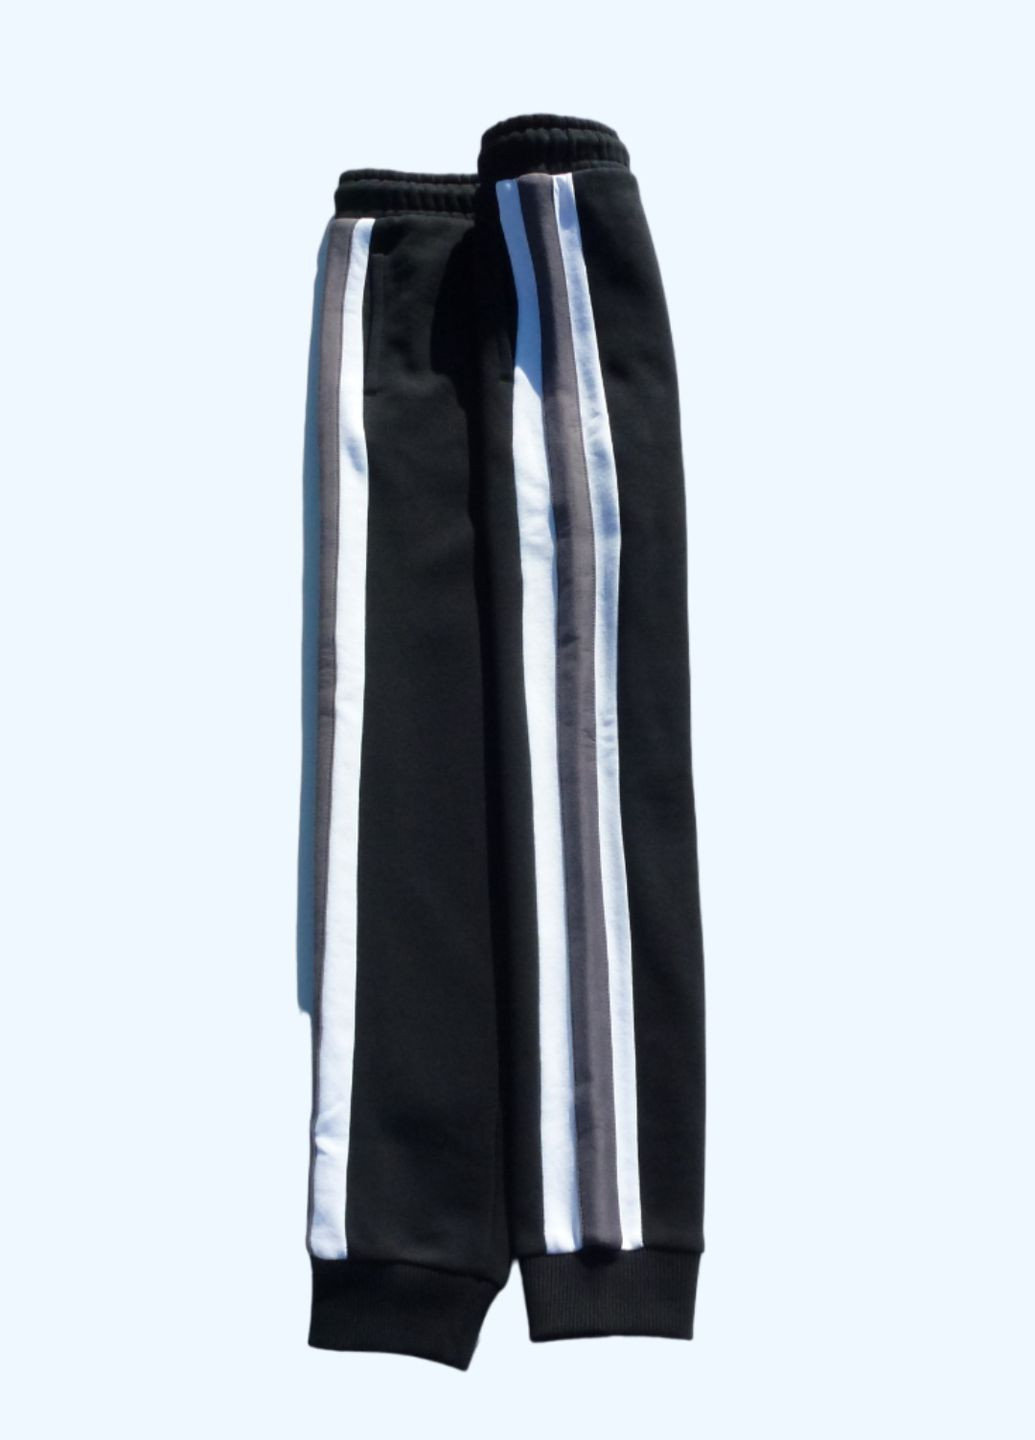 Спортивный костюм (толстовка+штаны) на флисе, с лампасами, 146-152 см, 11-12 р. George (264028920)